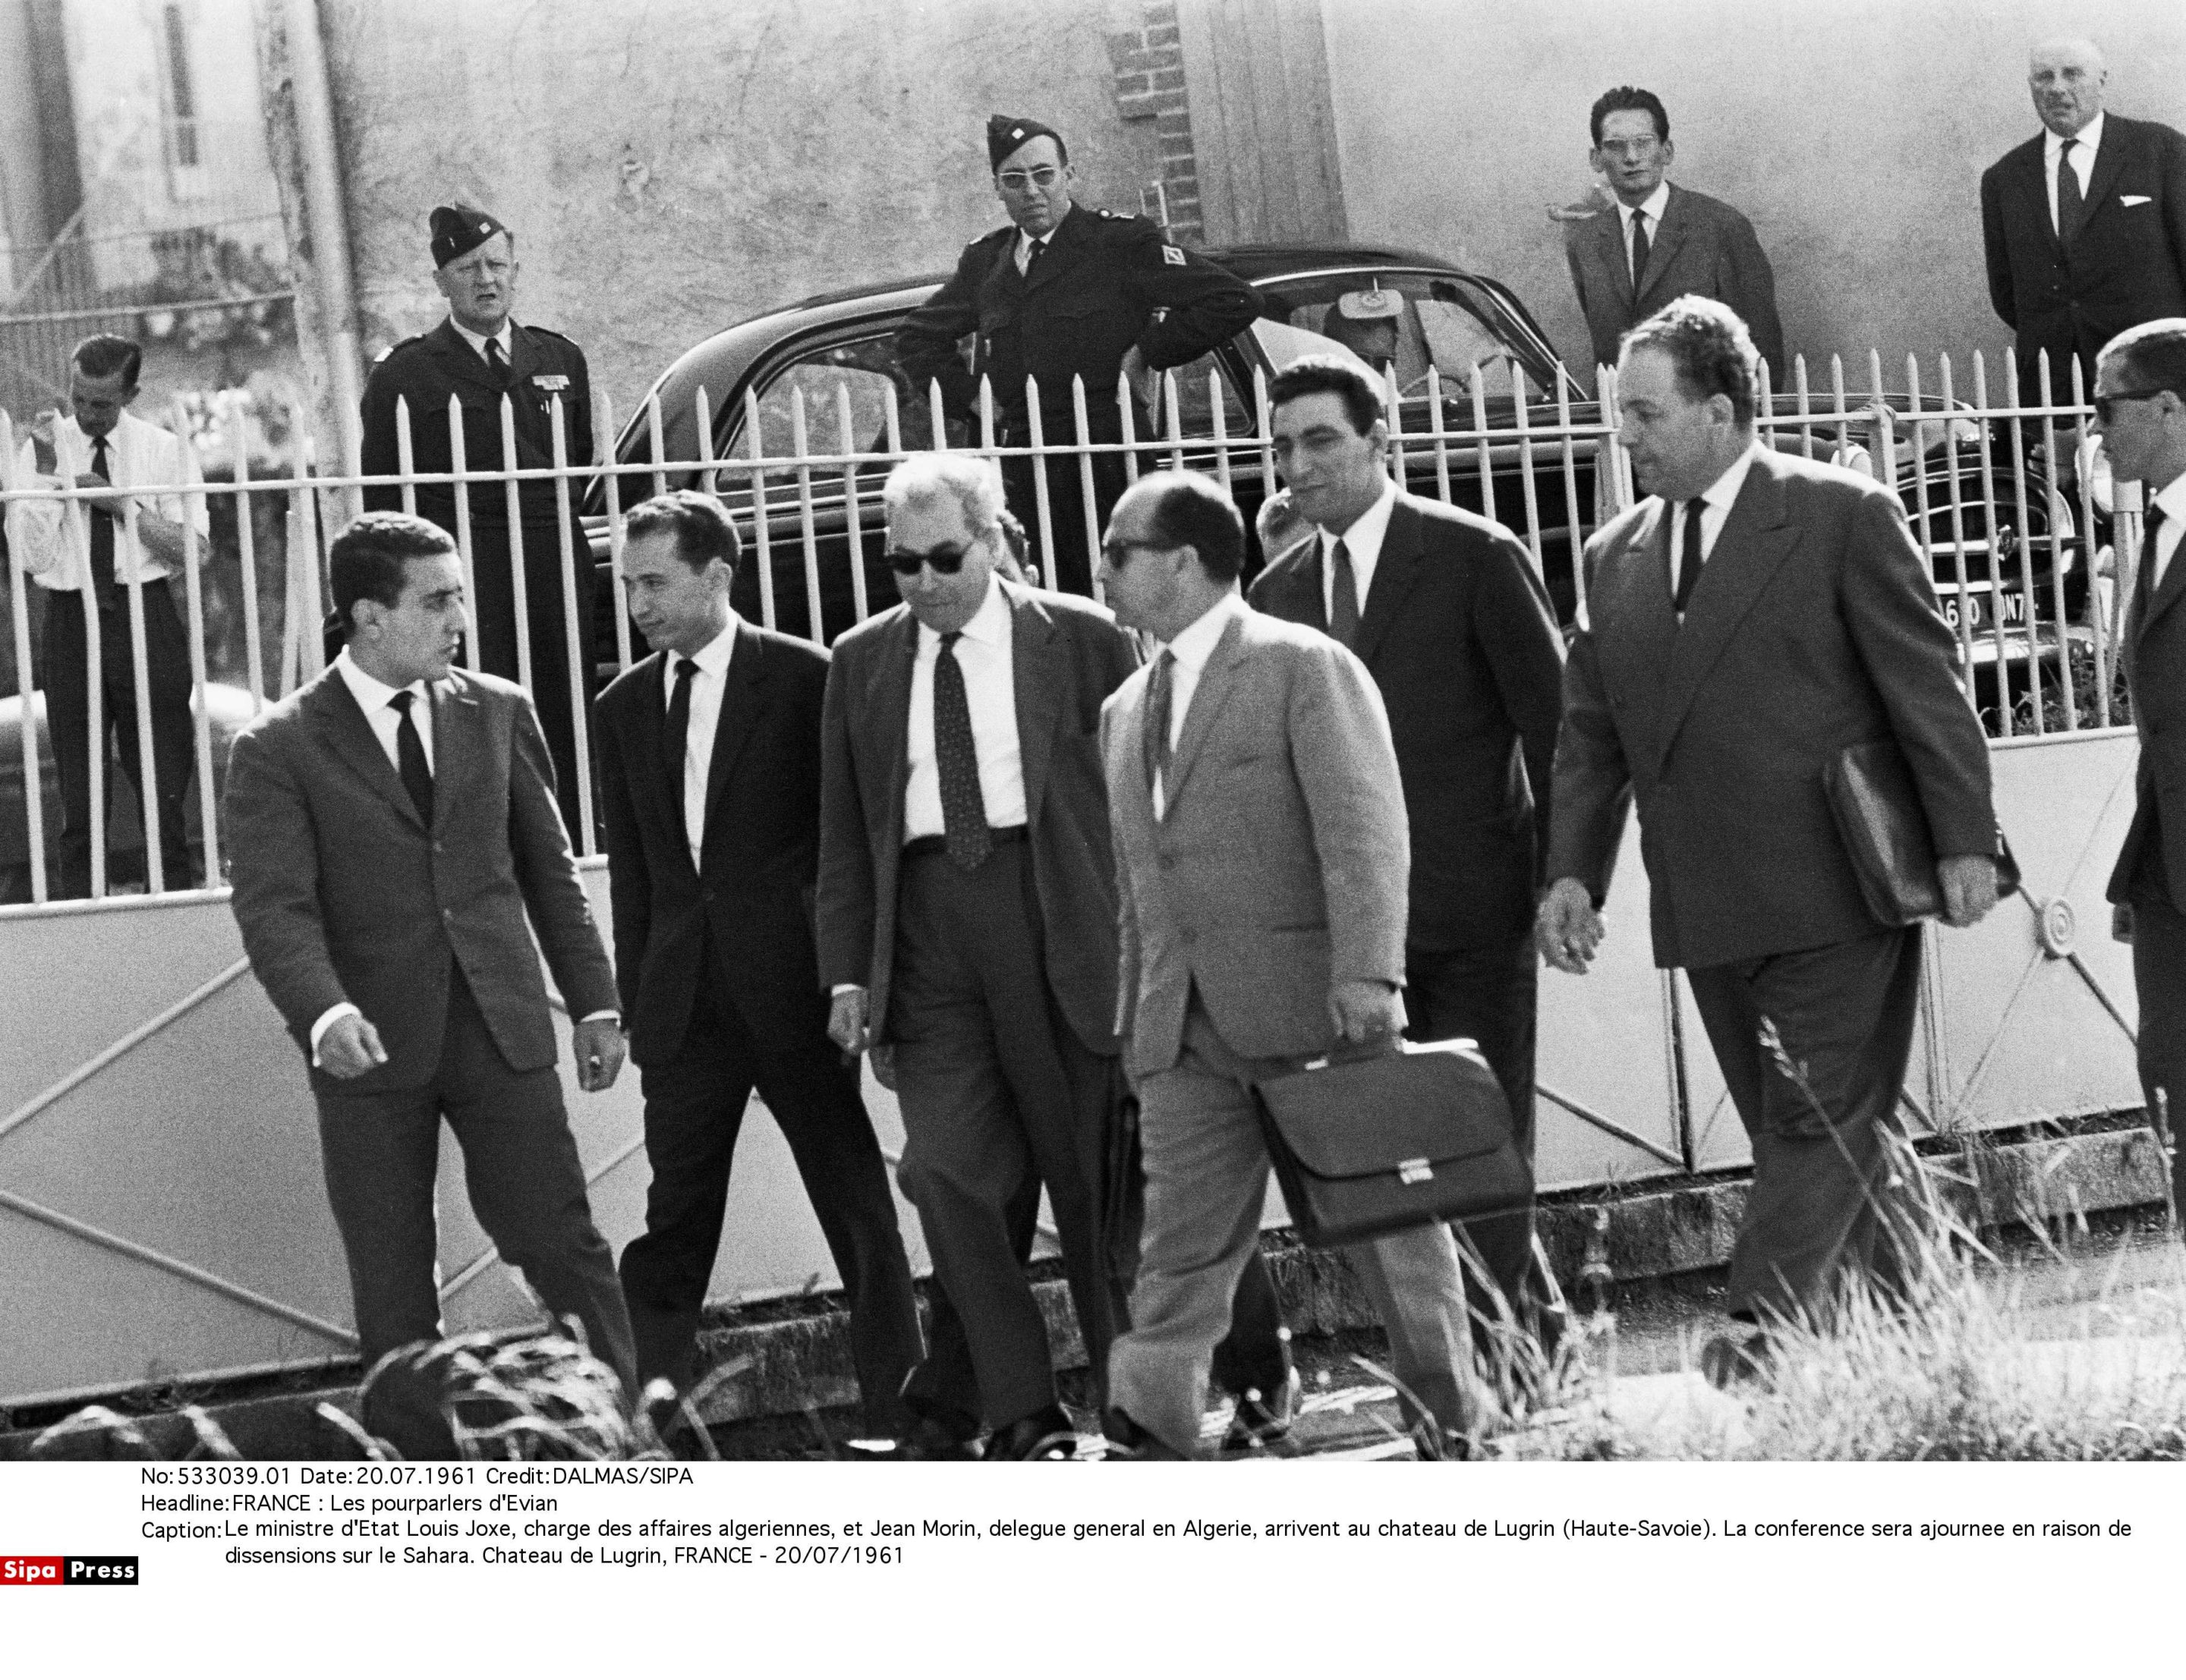 Le ministre d'Etat Louis Joxe, chargé des affaires algériennes, et Jean Morin, délégué général en Algérie, arrivent au château de Lugrin (Haute-Savoie).               20/07/1961